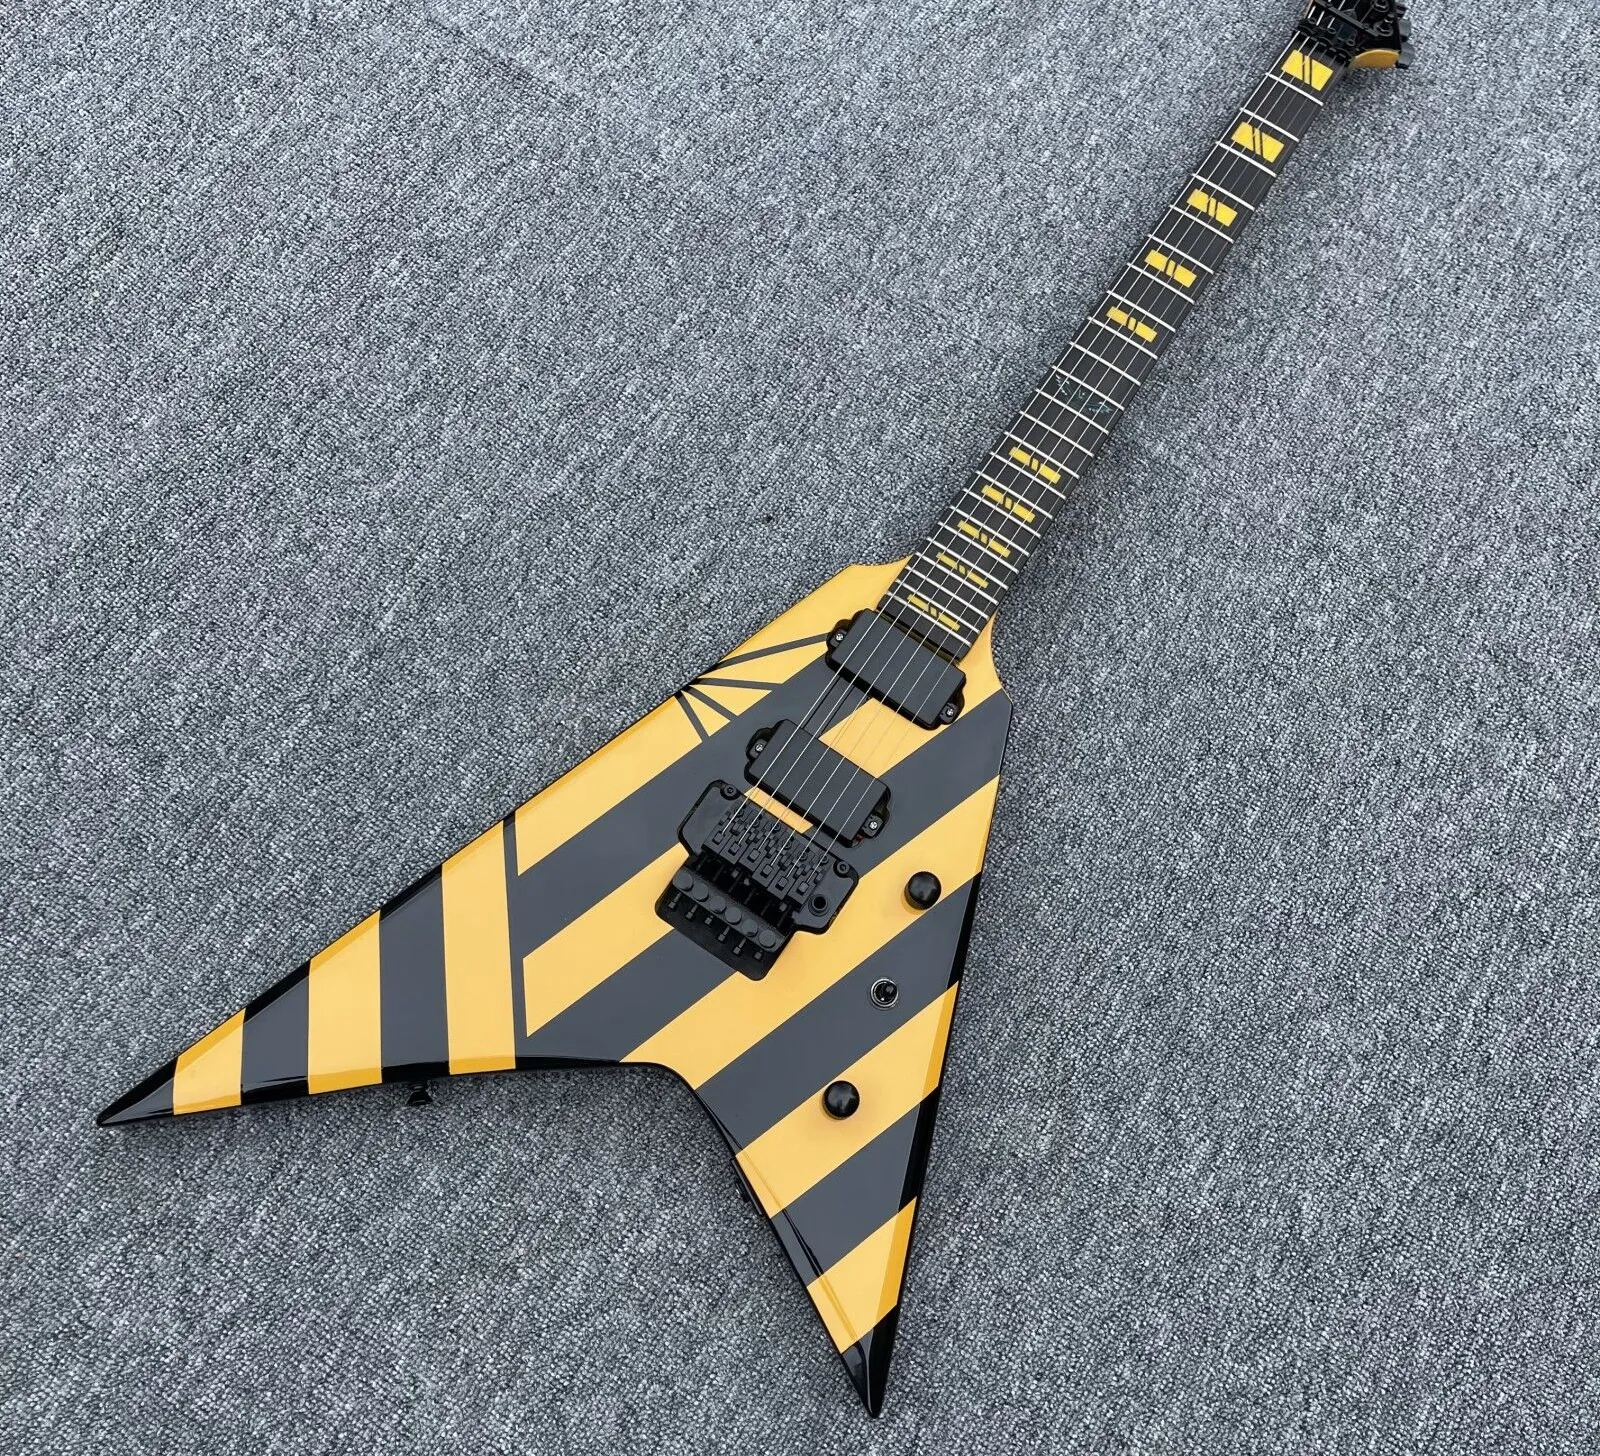 Rare Parallaxe V2FR Michael Sweet Flying V Yellow Stripe 일렉트릭 기타 플로이드 로즈 트레몰로 브리지, 블랙 하드웨어, 777 뒤 표지